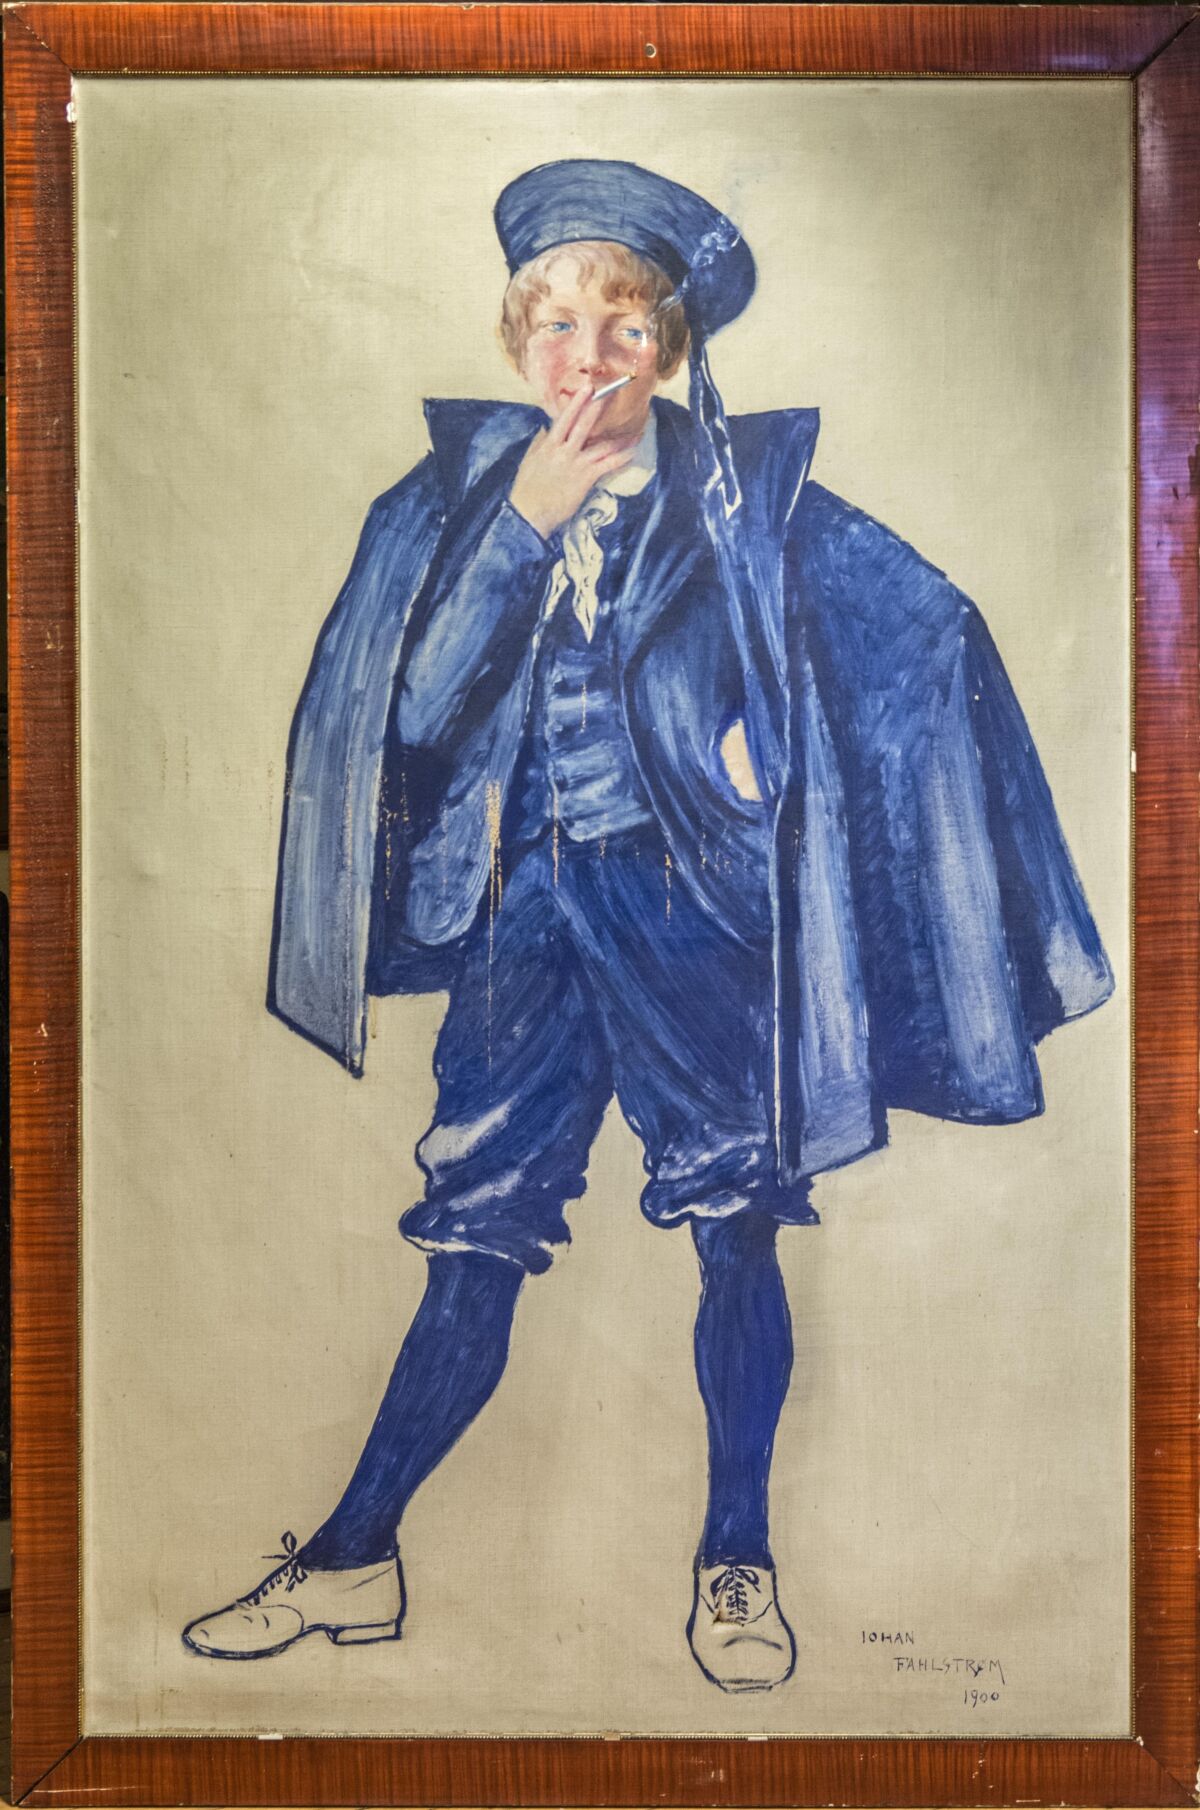 Tegning og maleri av ung gutt kledd i blå bukse, vest, kappe og hatt står og røyker. Foto av maleri.